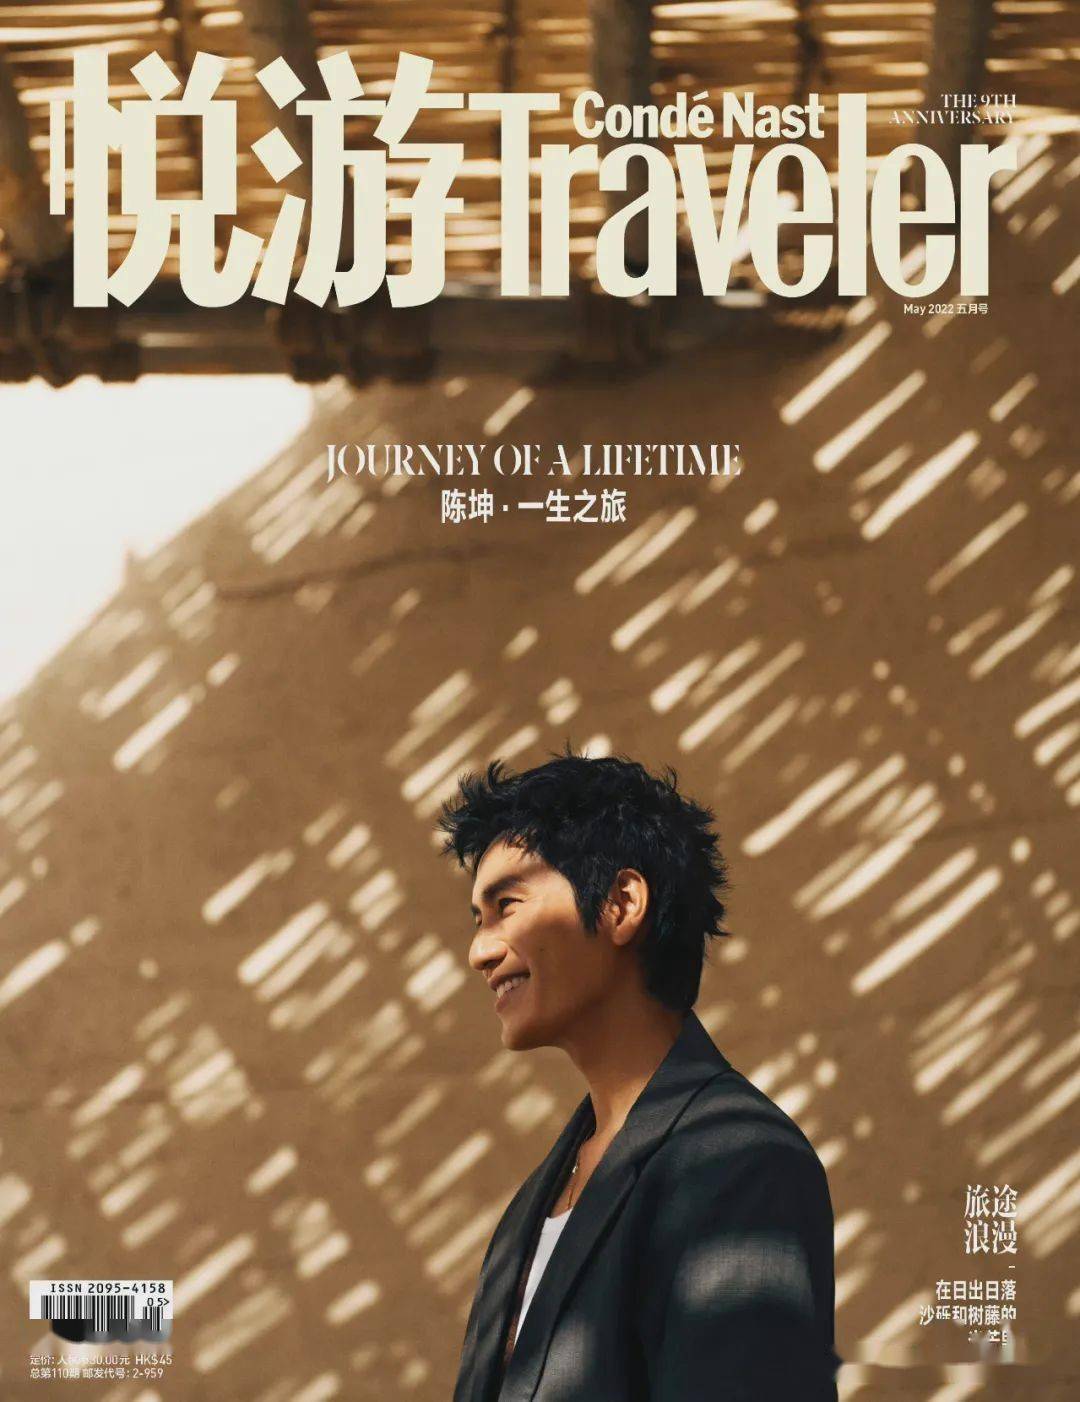 演员陈坤《悦游》九周年封面大片，化身旅人自在游走敦煌